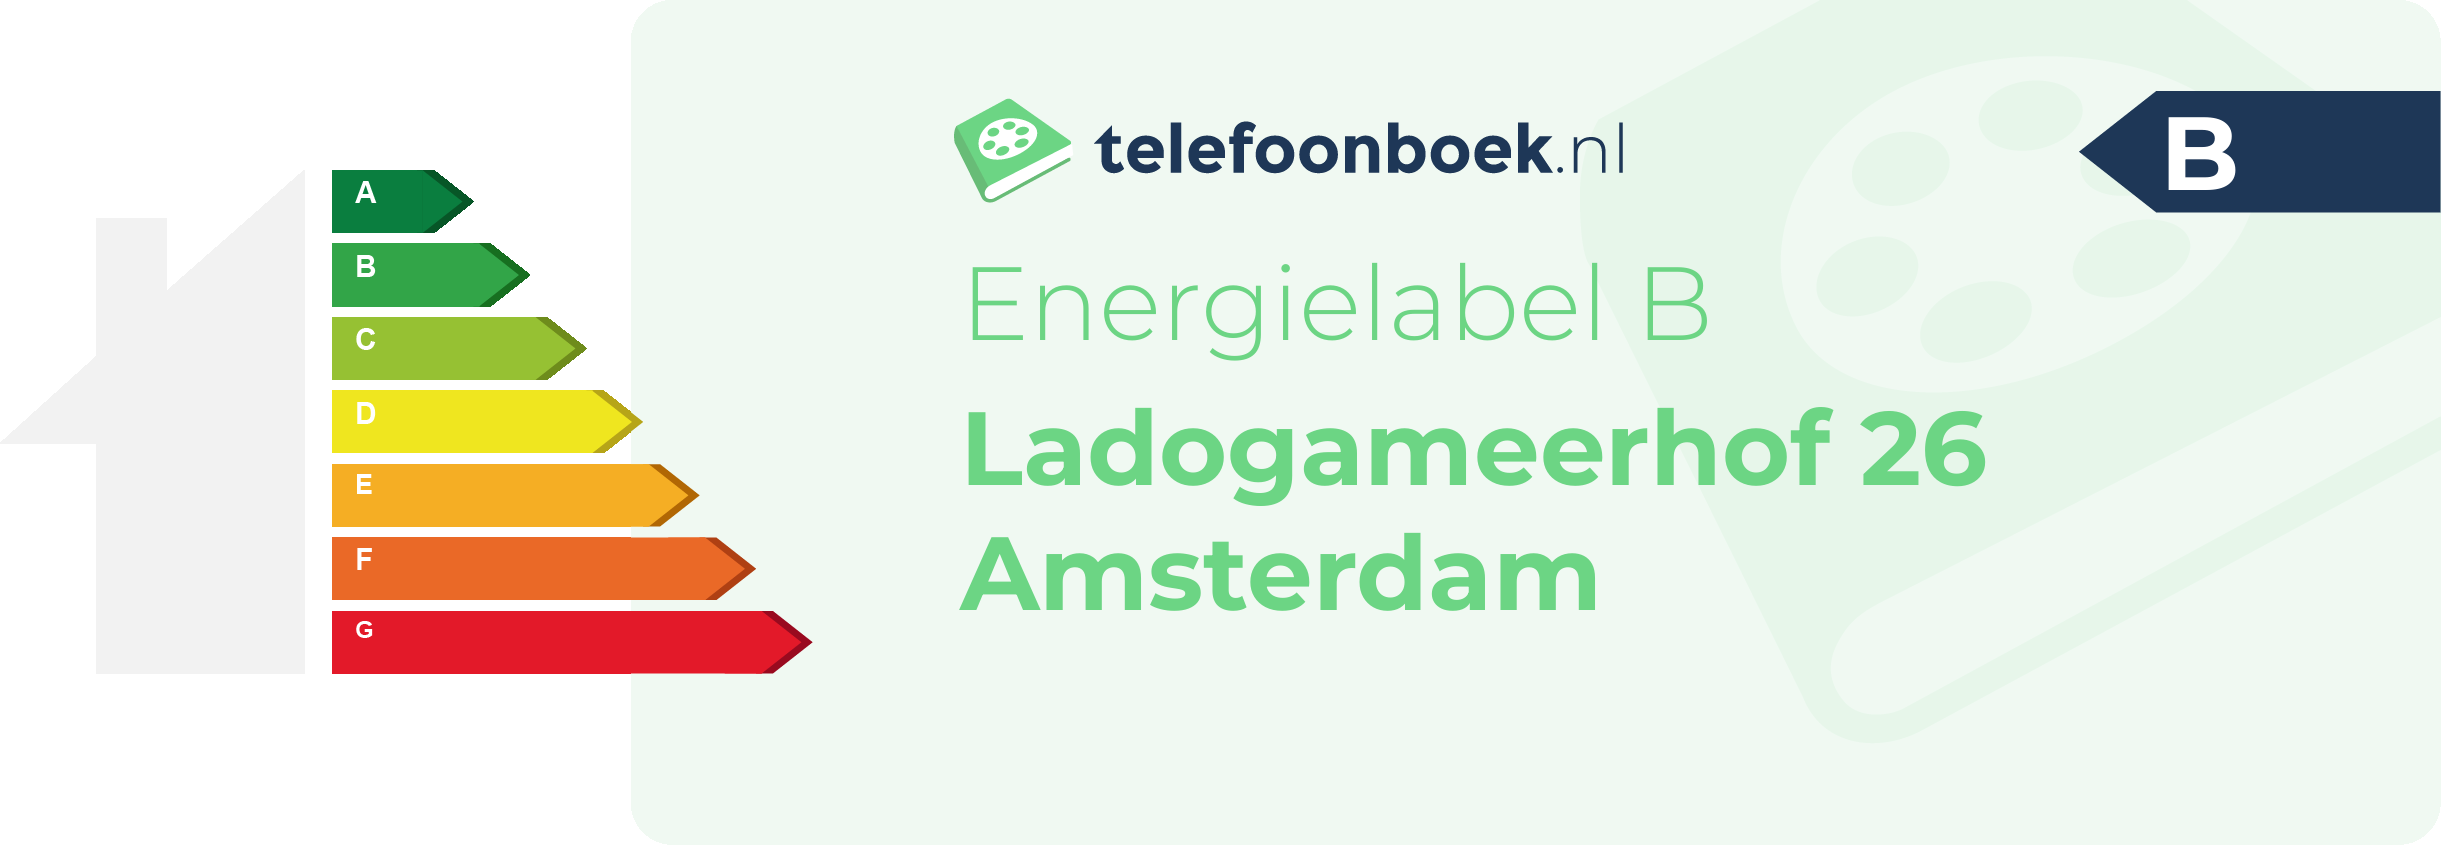 Energielabel Ladogameerhof 26 Amsterdam